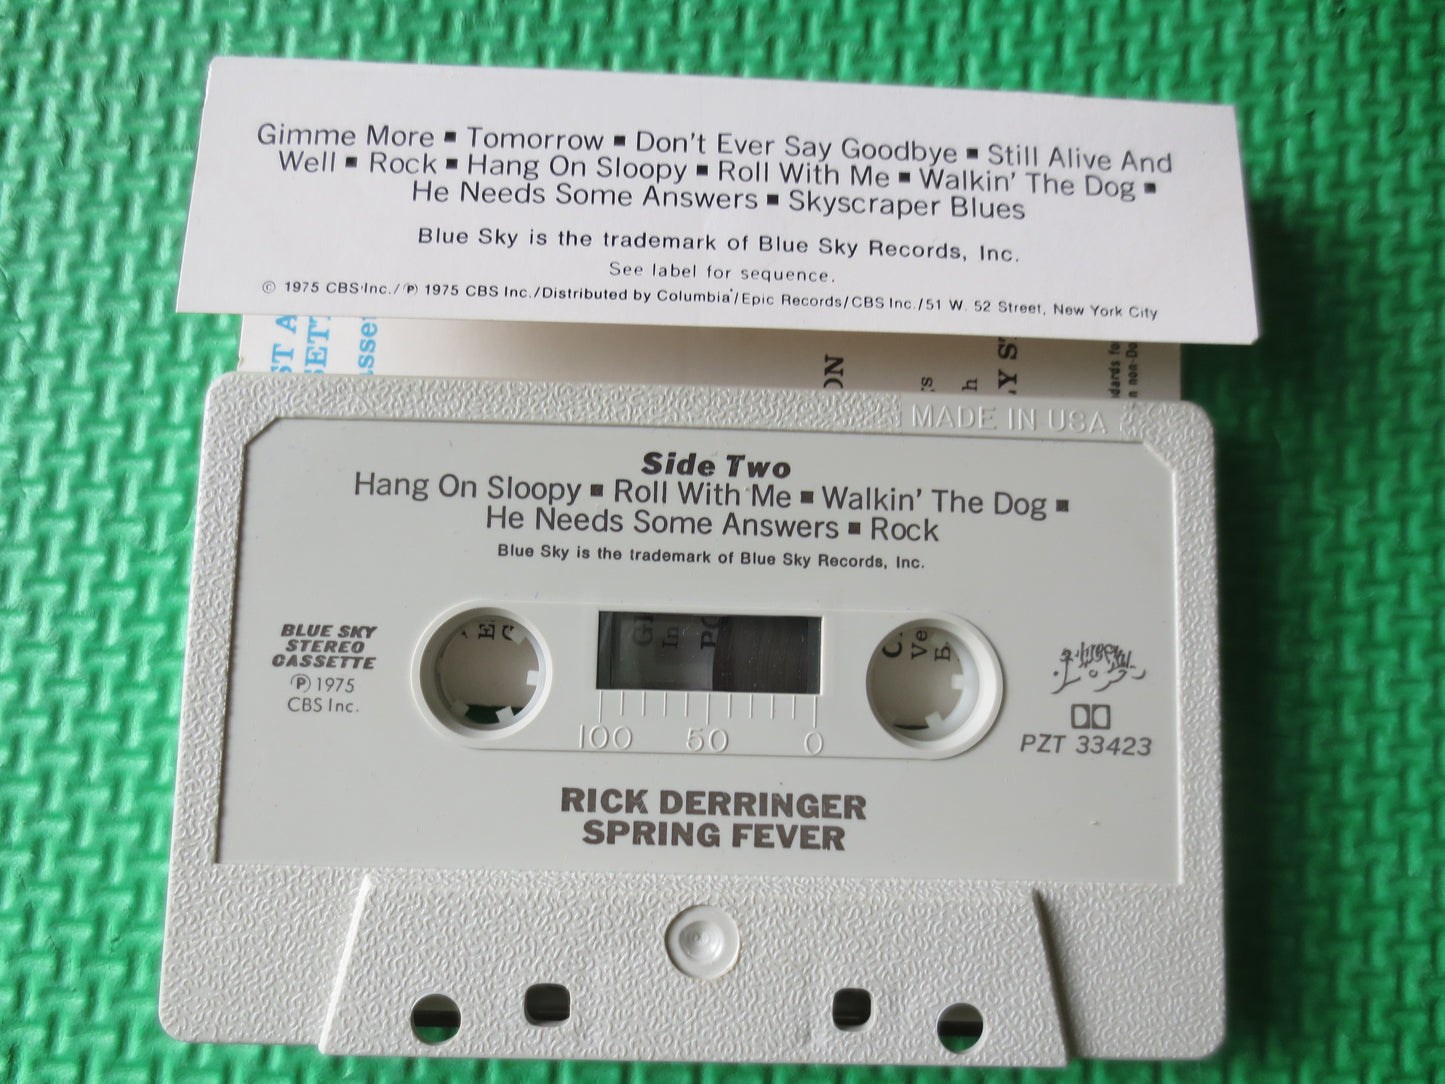 RICK DERRINGER, Tape, Spring FEVER, Rick Derringer Tape, Rick Derringer Album, Tape Cassette, Rock Cassette, Cassette Music